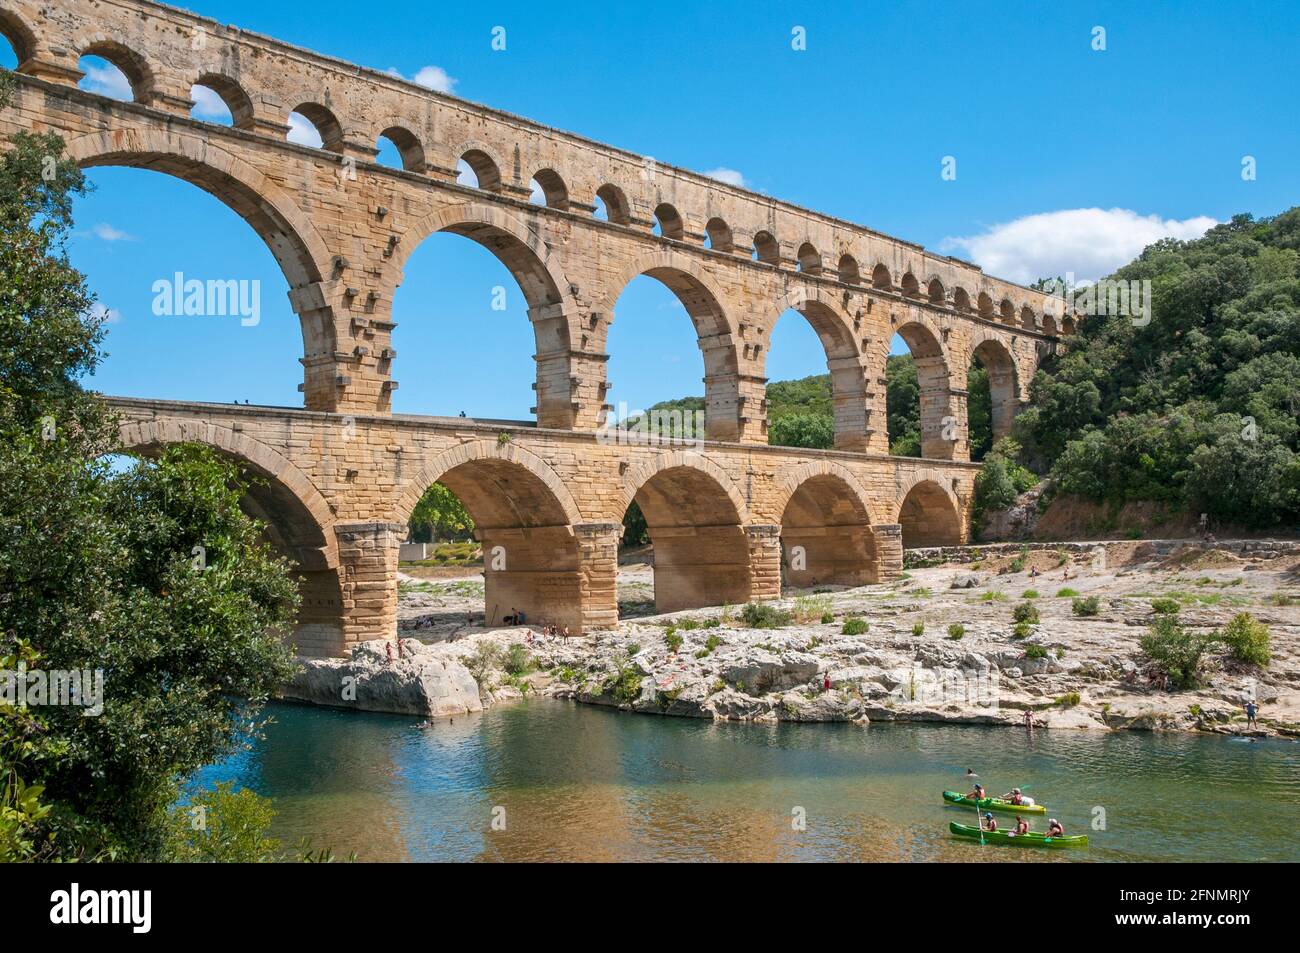 Rivière Gardon et pont du Gard, site classé au patrimoine mondial de l'UNESCO, Gard (30), région occitanie, France Banque D'Images